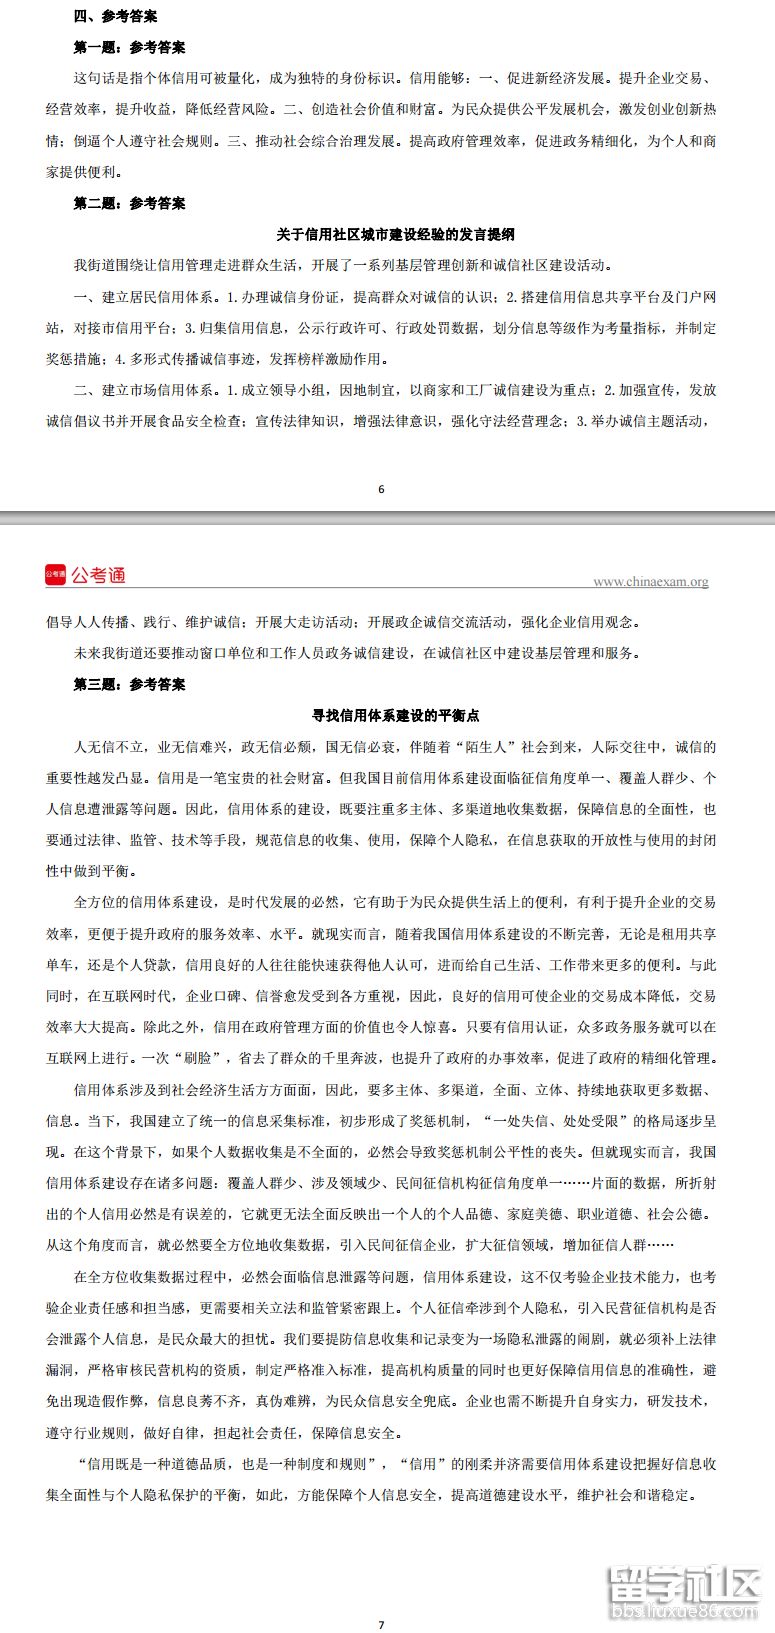 2023年重慶公務員考試申請答案已公布!